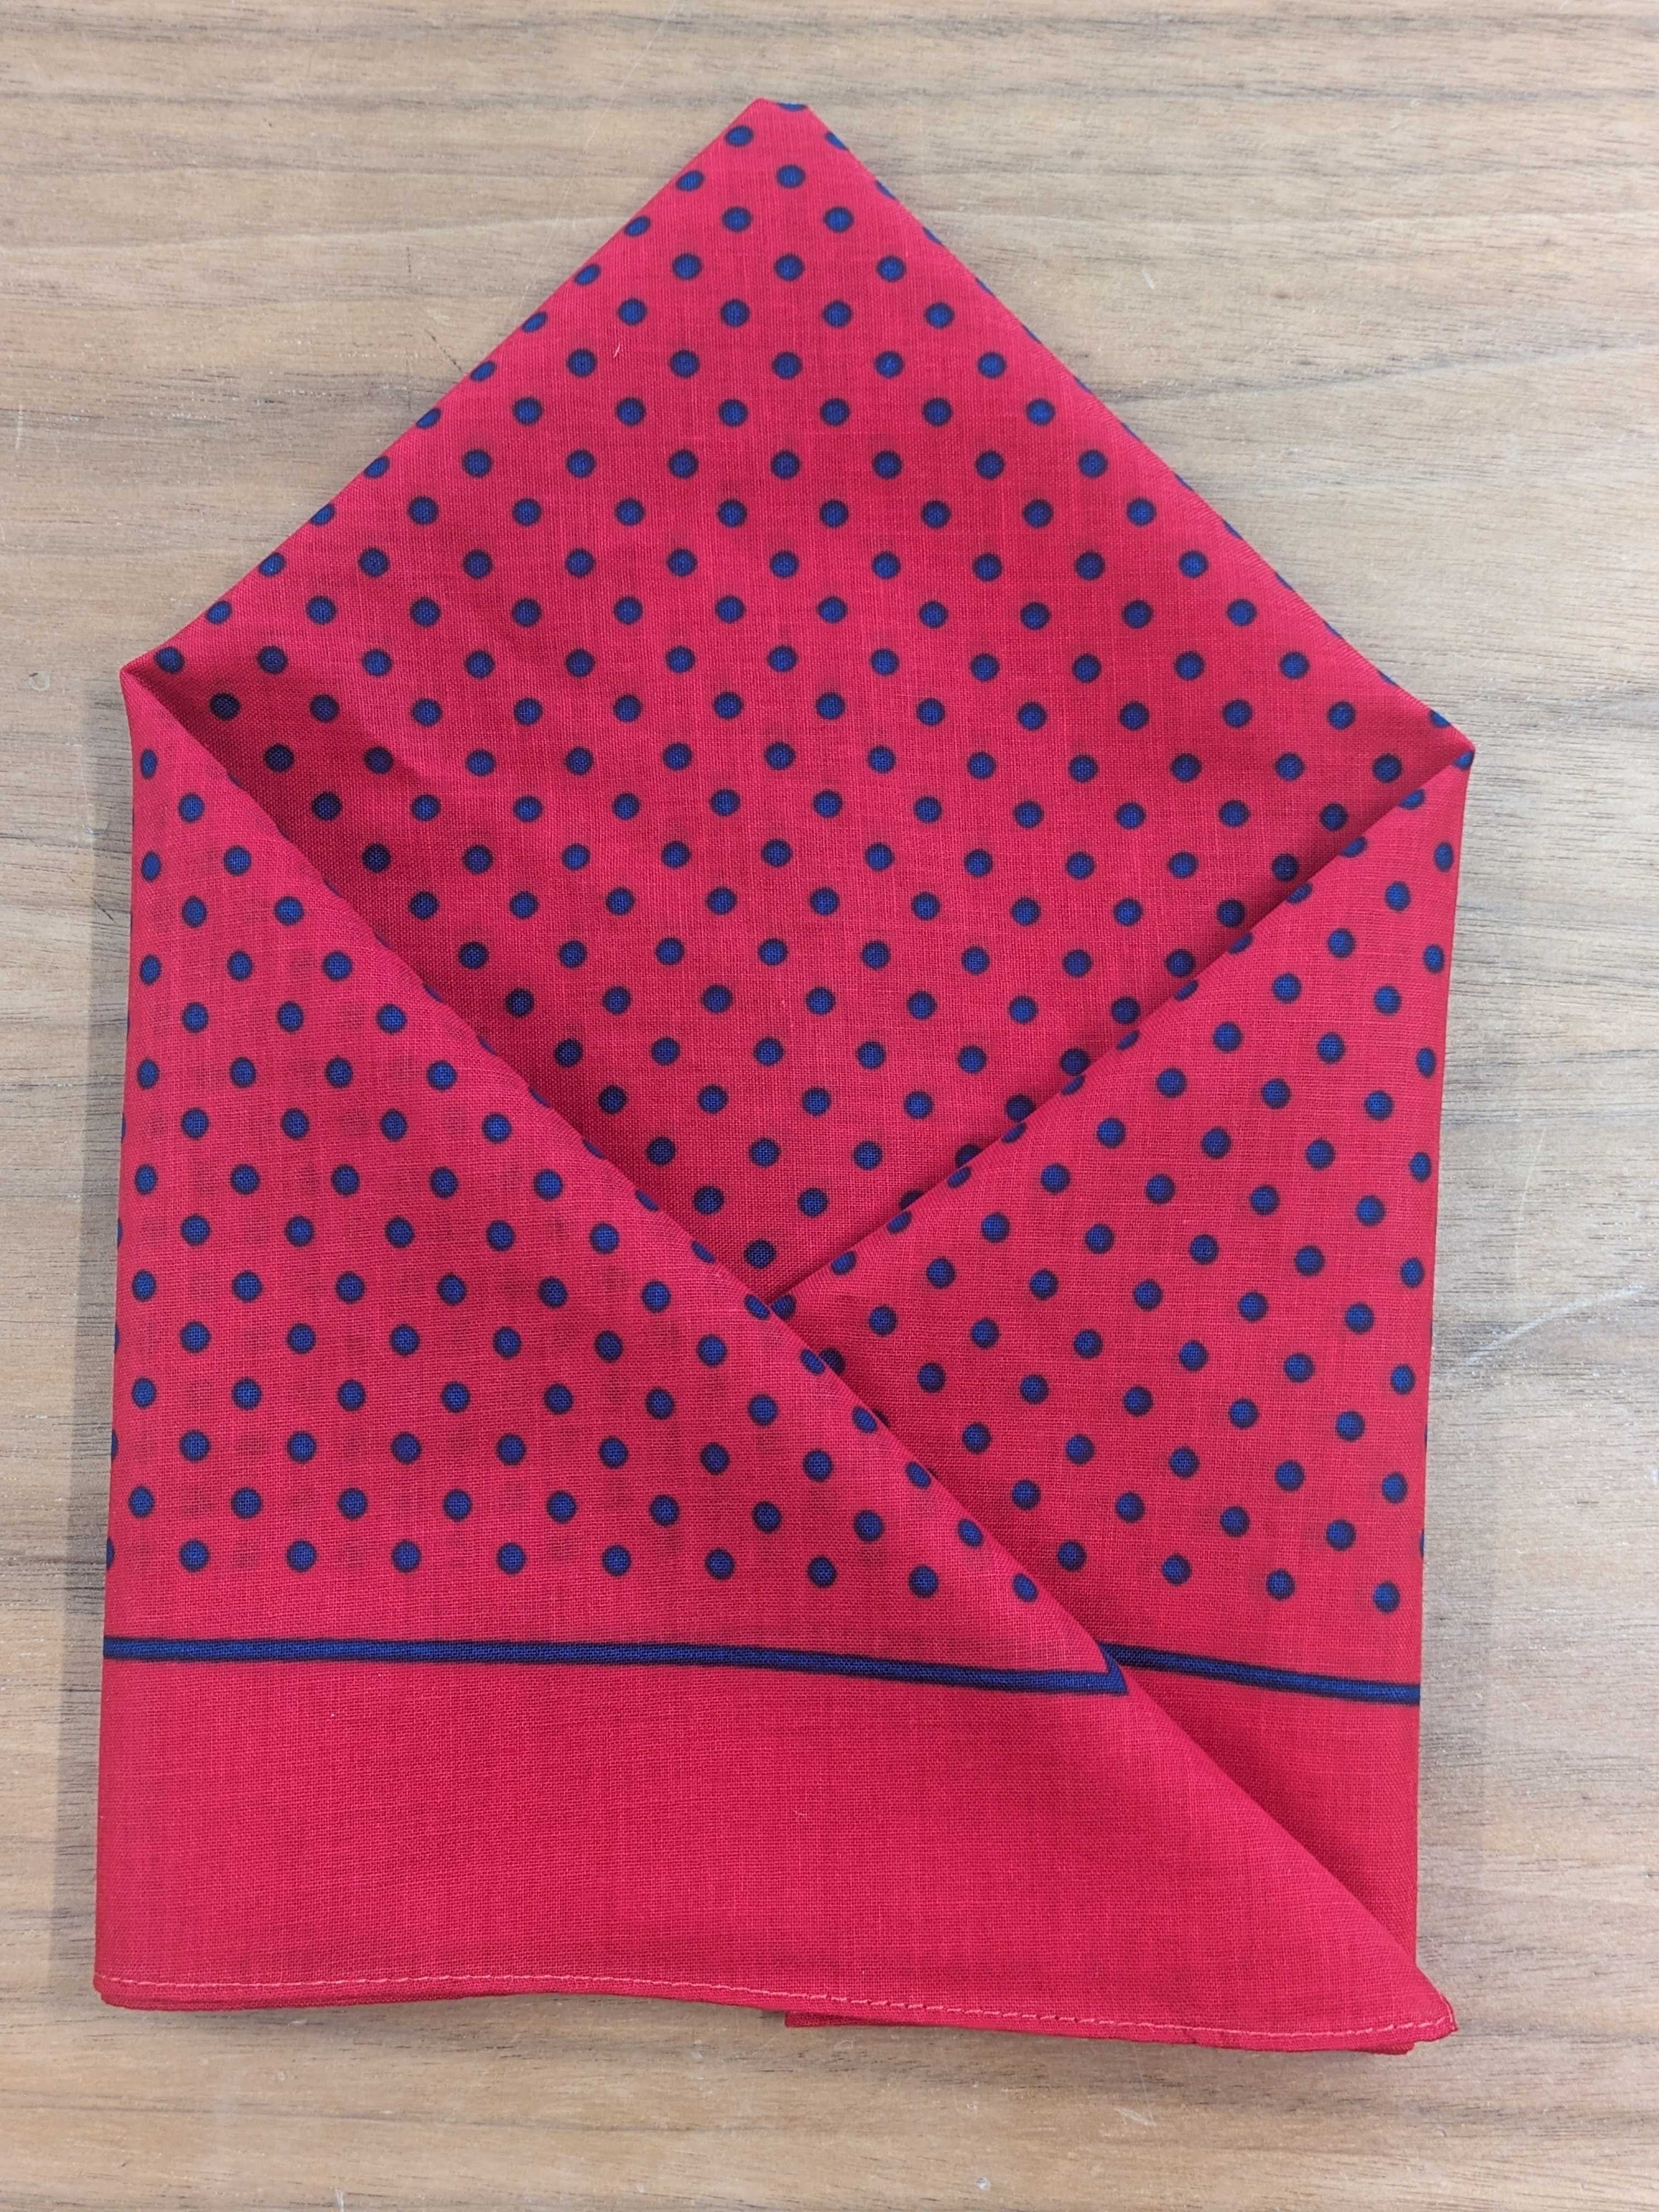 Handkerchief - Red Small Navy Polka Dot